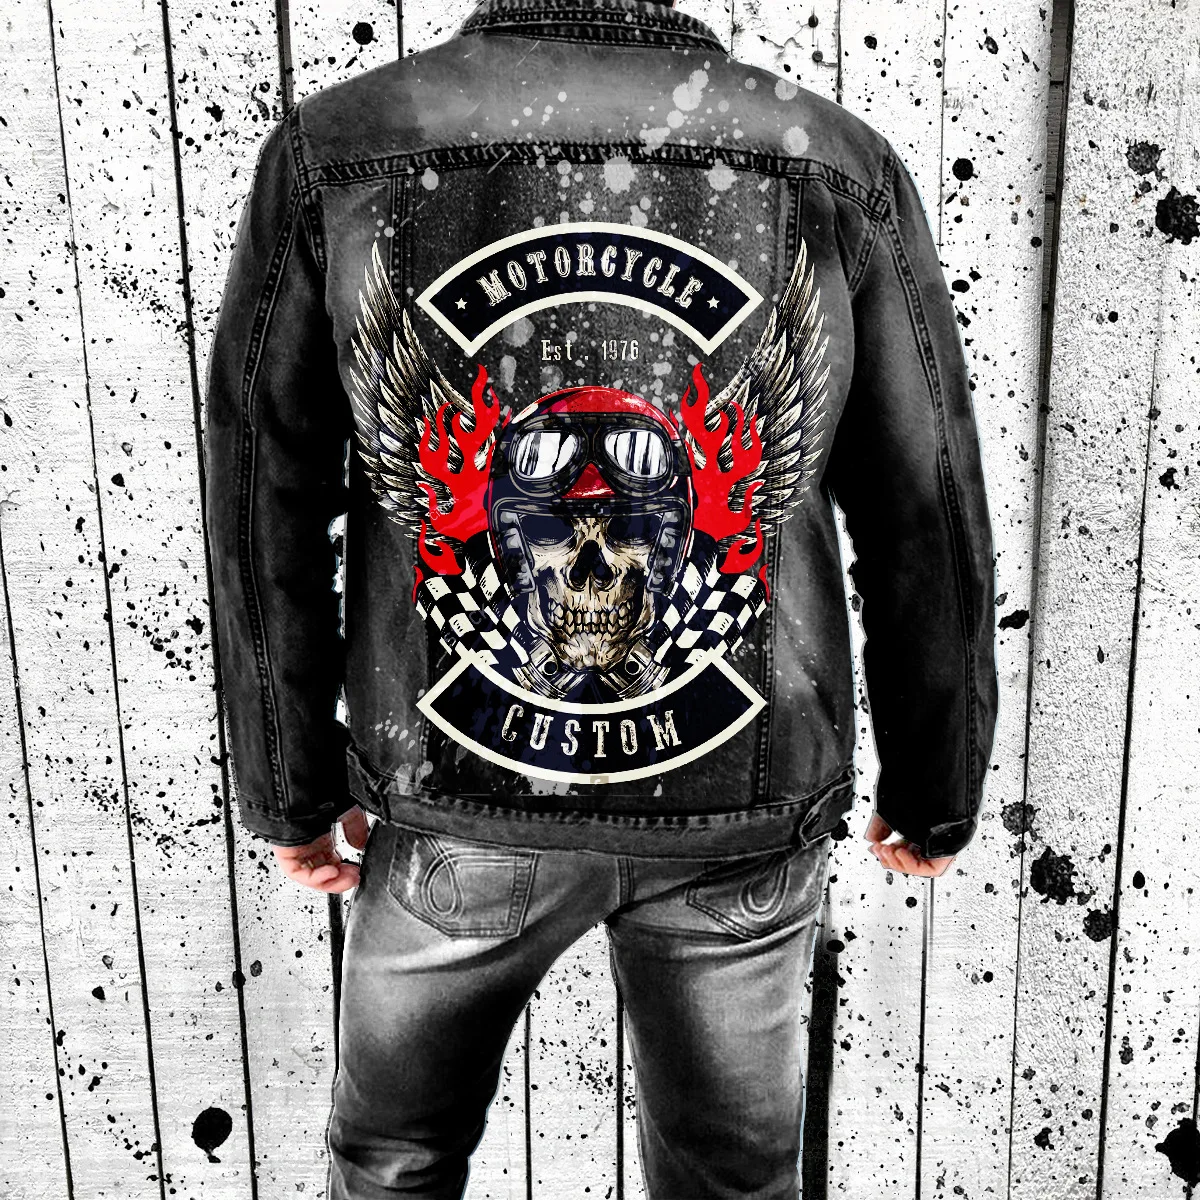 

Куртка мужская джинсовая в стиле хип-хоп, уличная одежда с принтом черепа и граффити, бомбер из денима в стиле панк-рок, винтажная